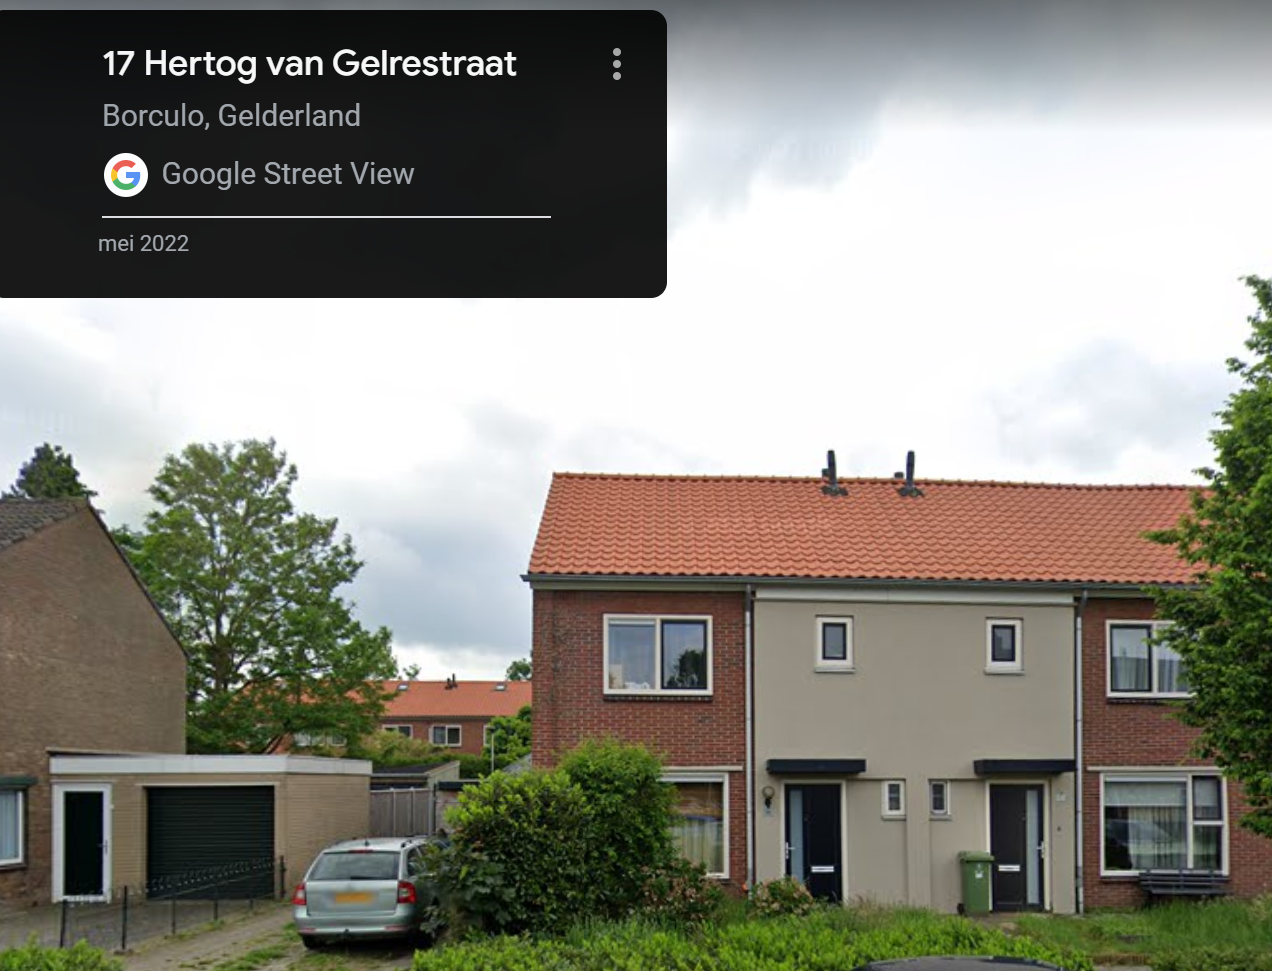 Hertog van Gelrestraat 17, 7271 XA Borculo, Nederland